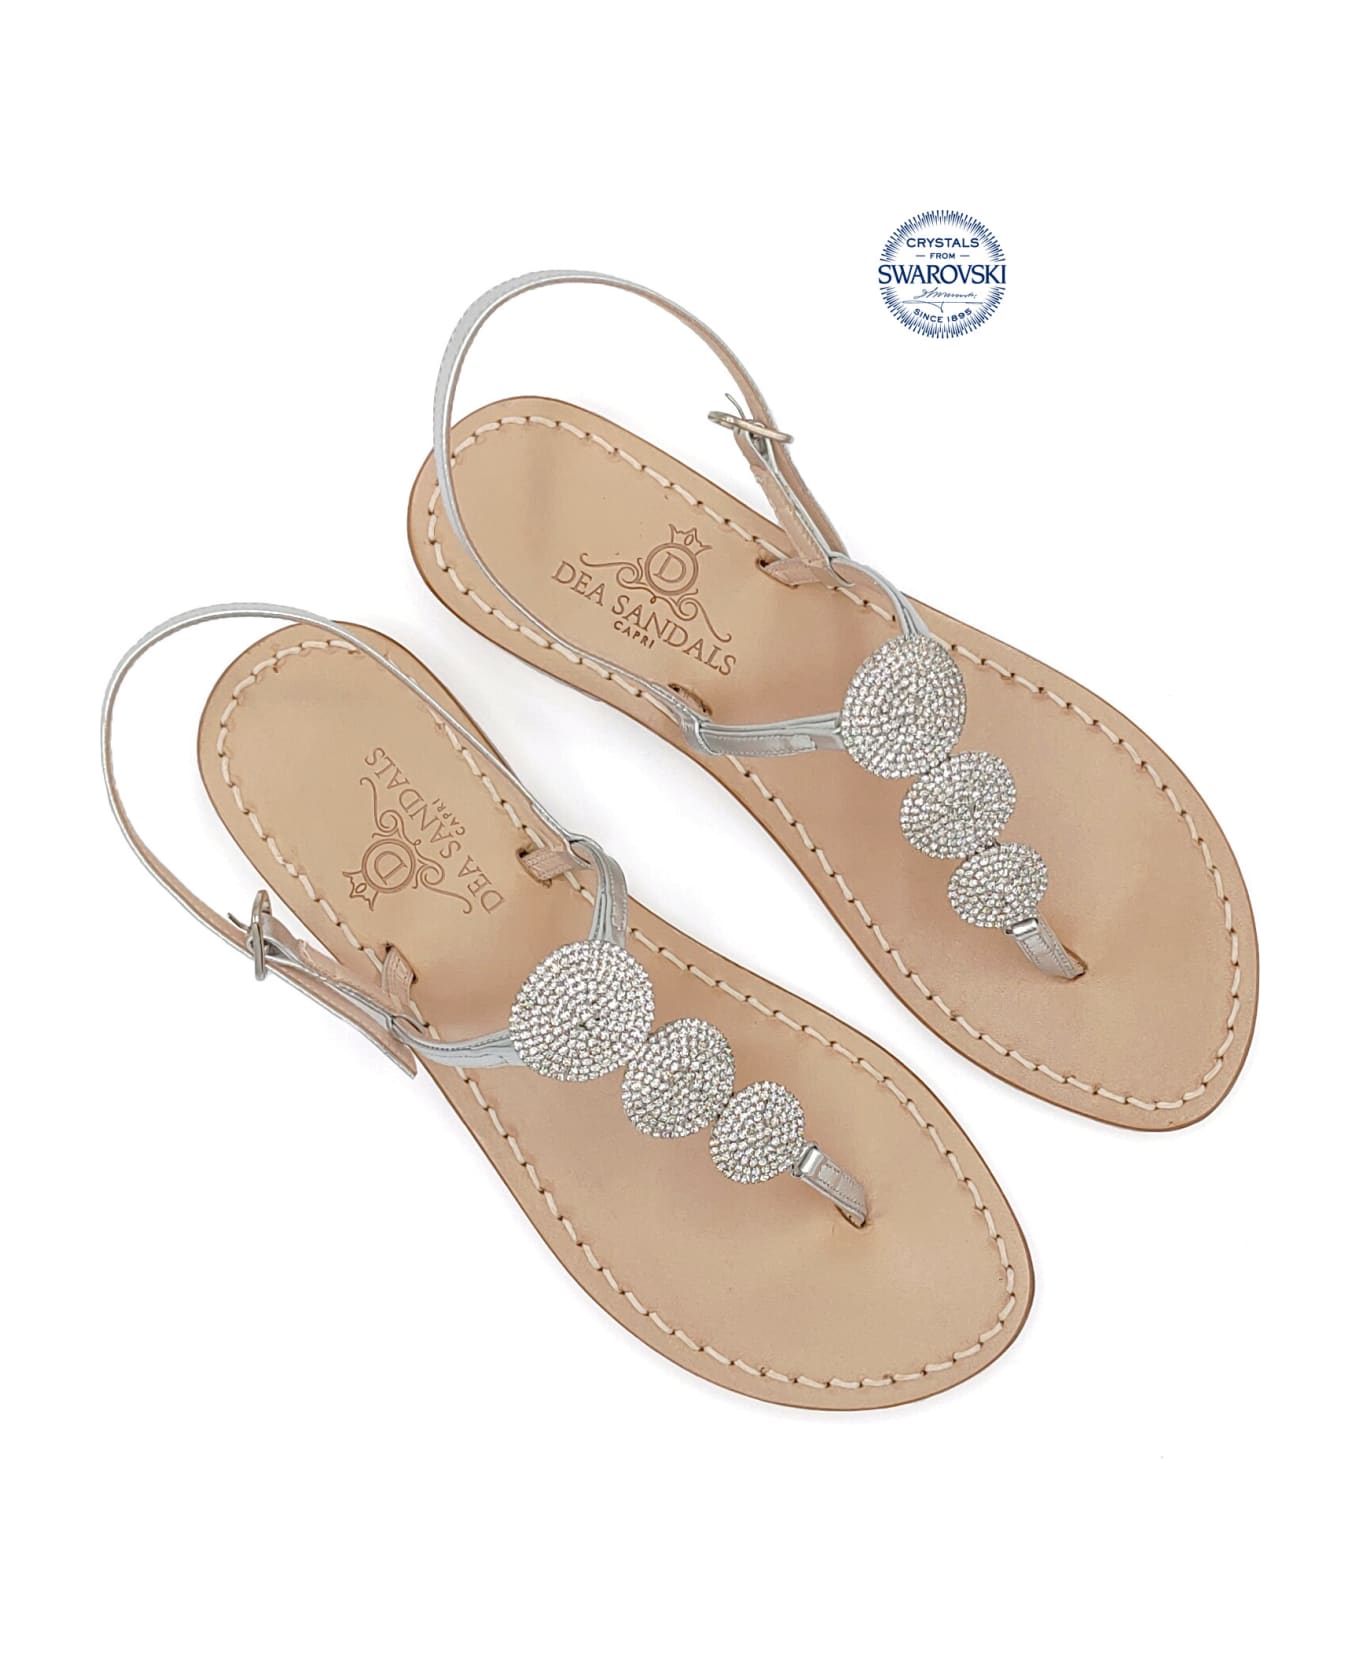 Dea Sandals Fari Di Capri Jewel Flip Flops Sandals - silver, natural crystal